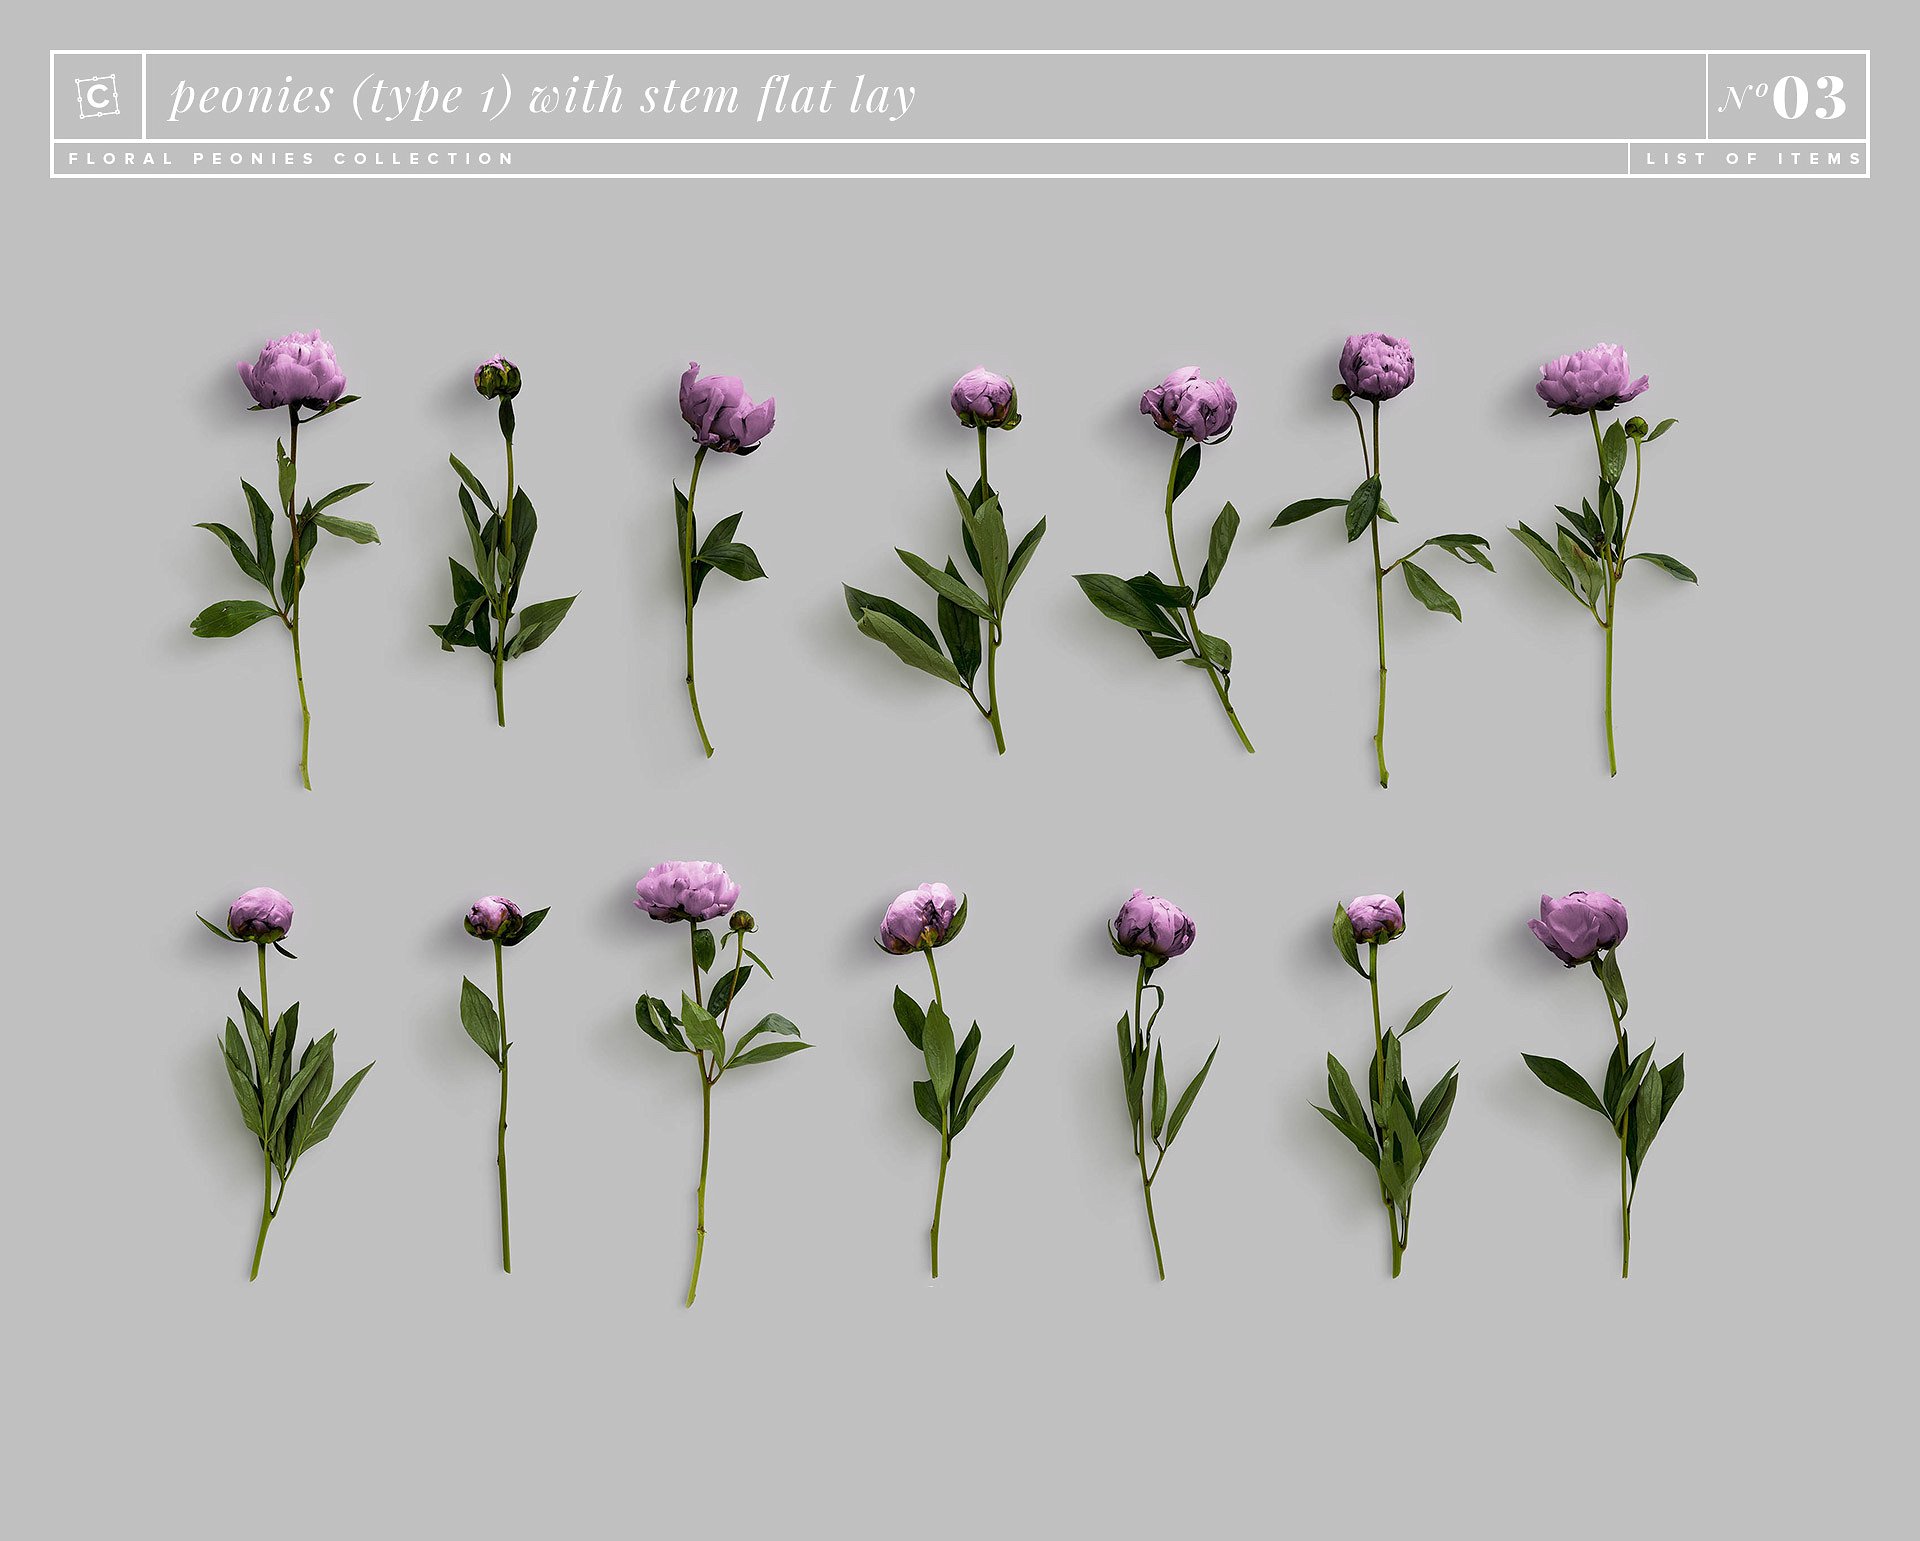 牡丹花卉系列高清图片集合 Floral Peonies Collection插图16